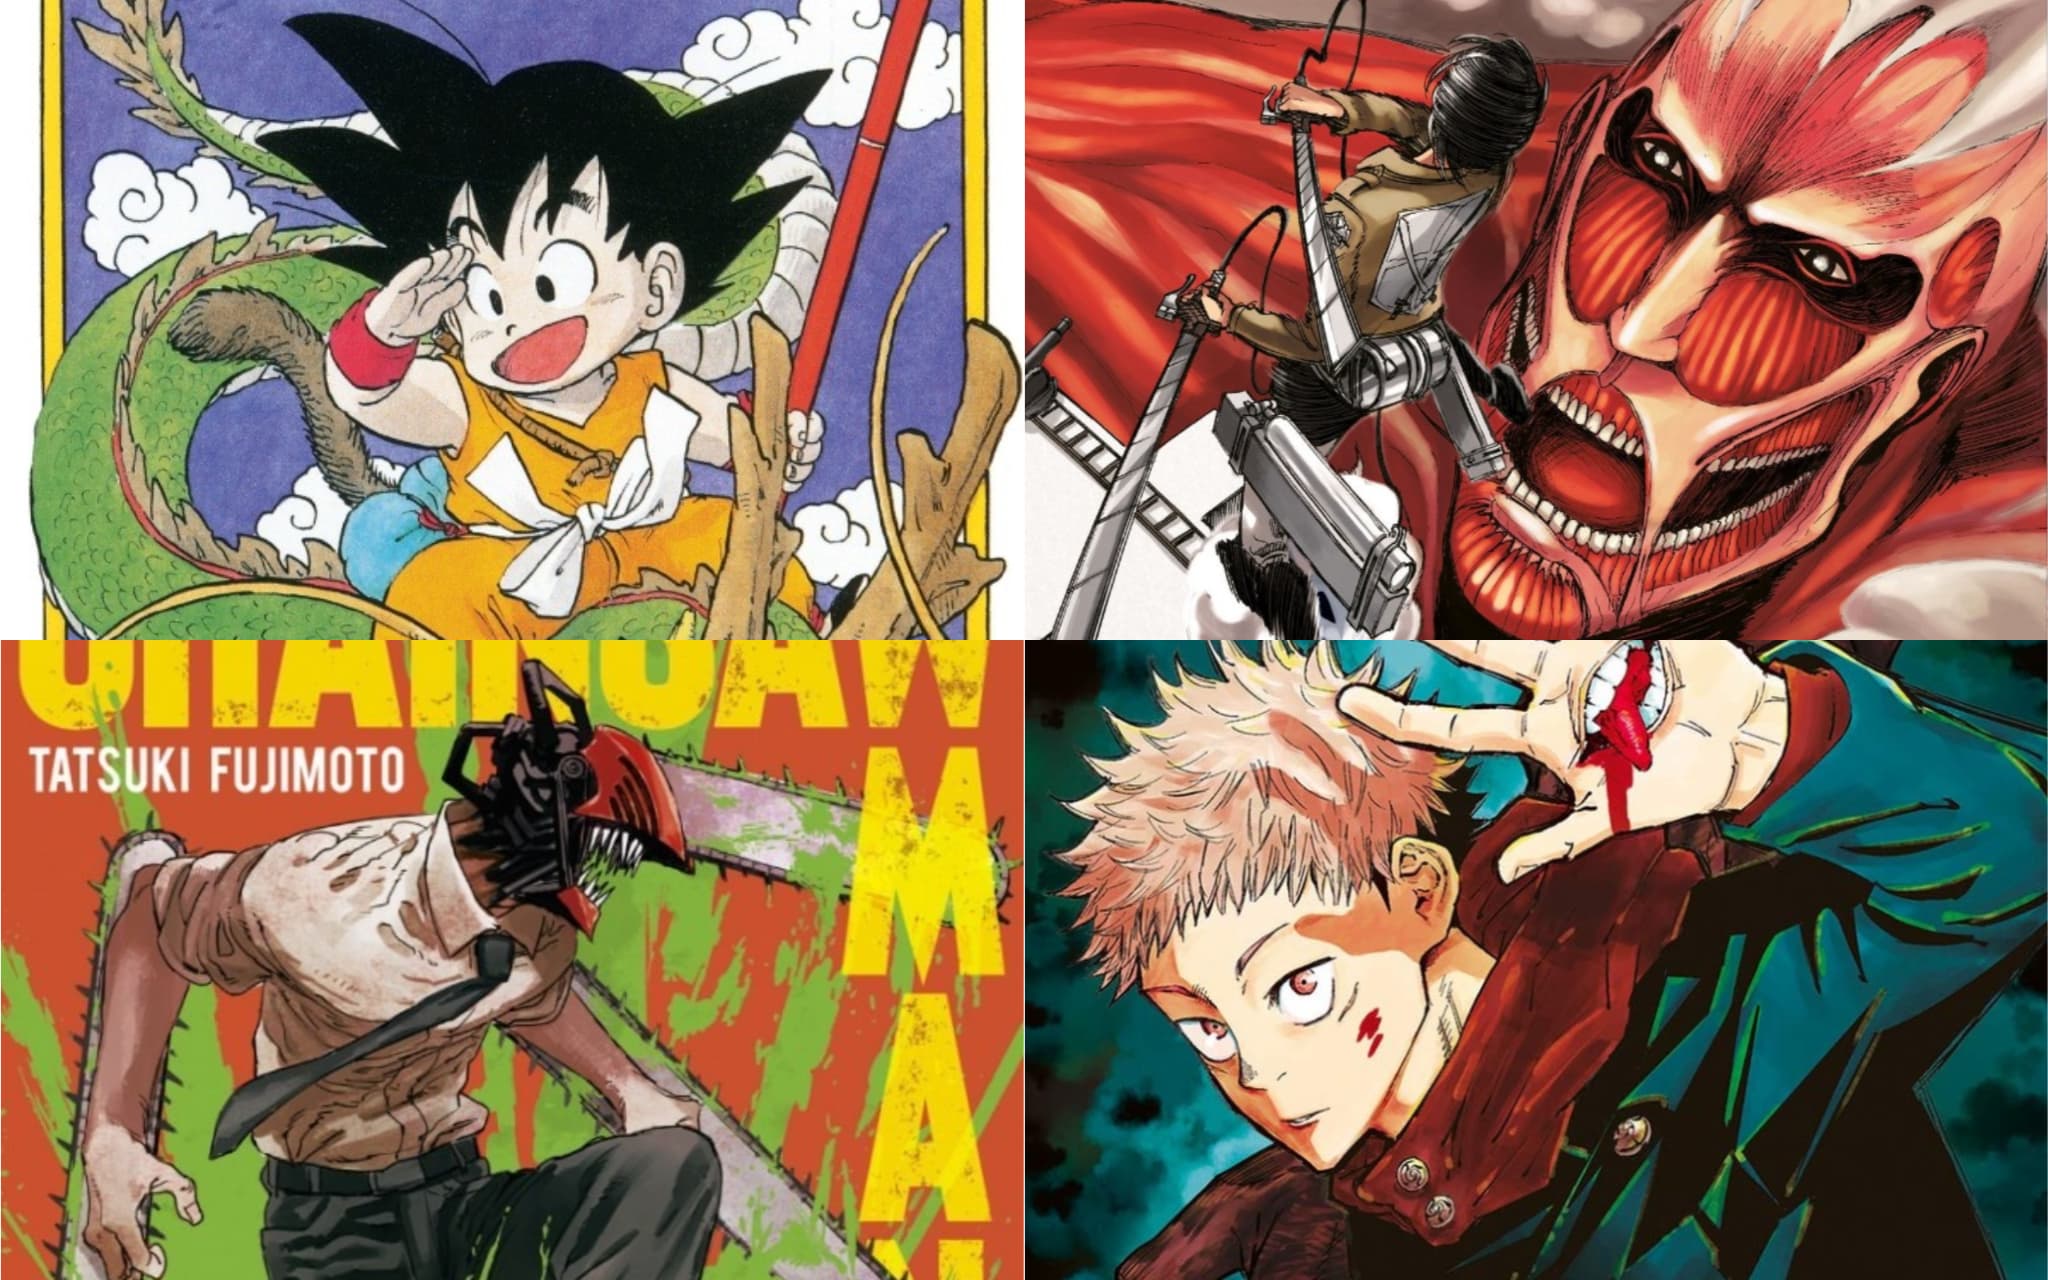 Le manga accuse une lourde baisse des ventes en France